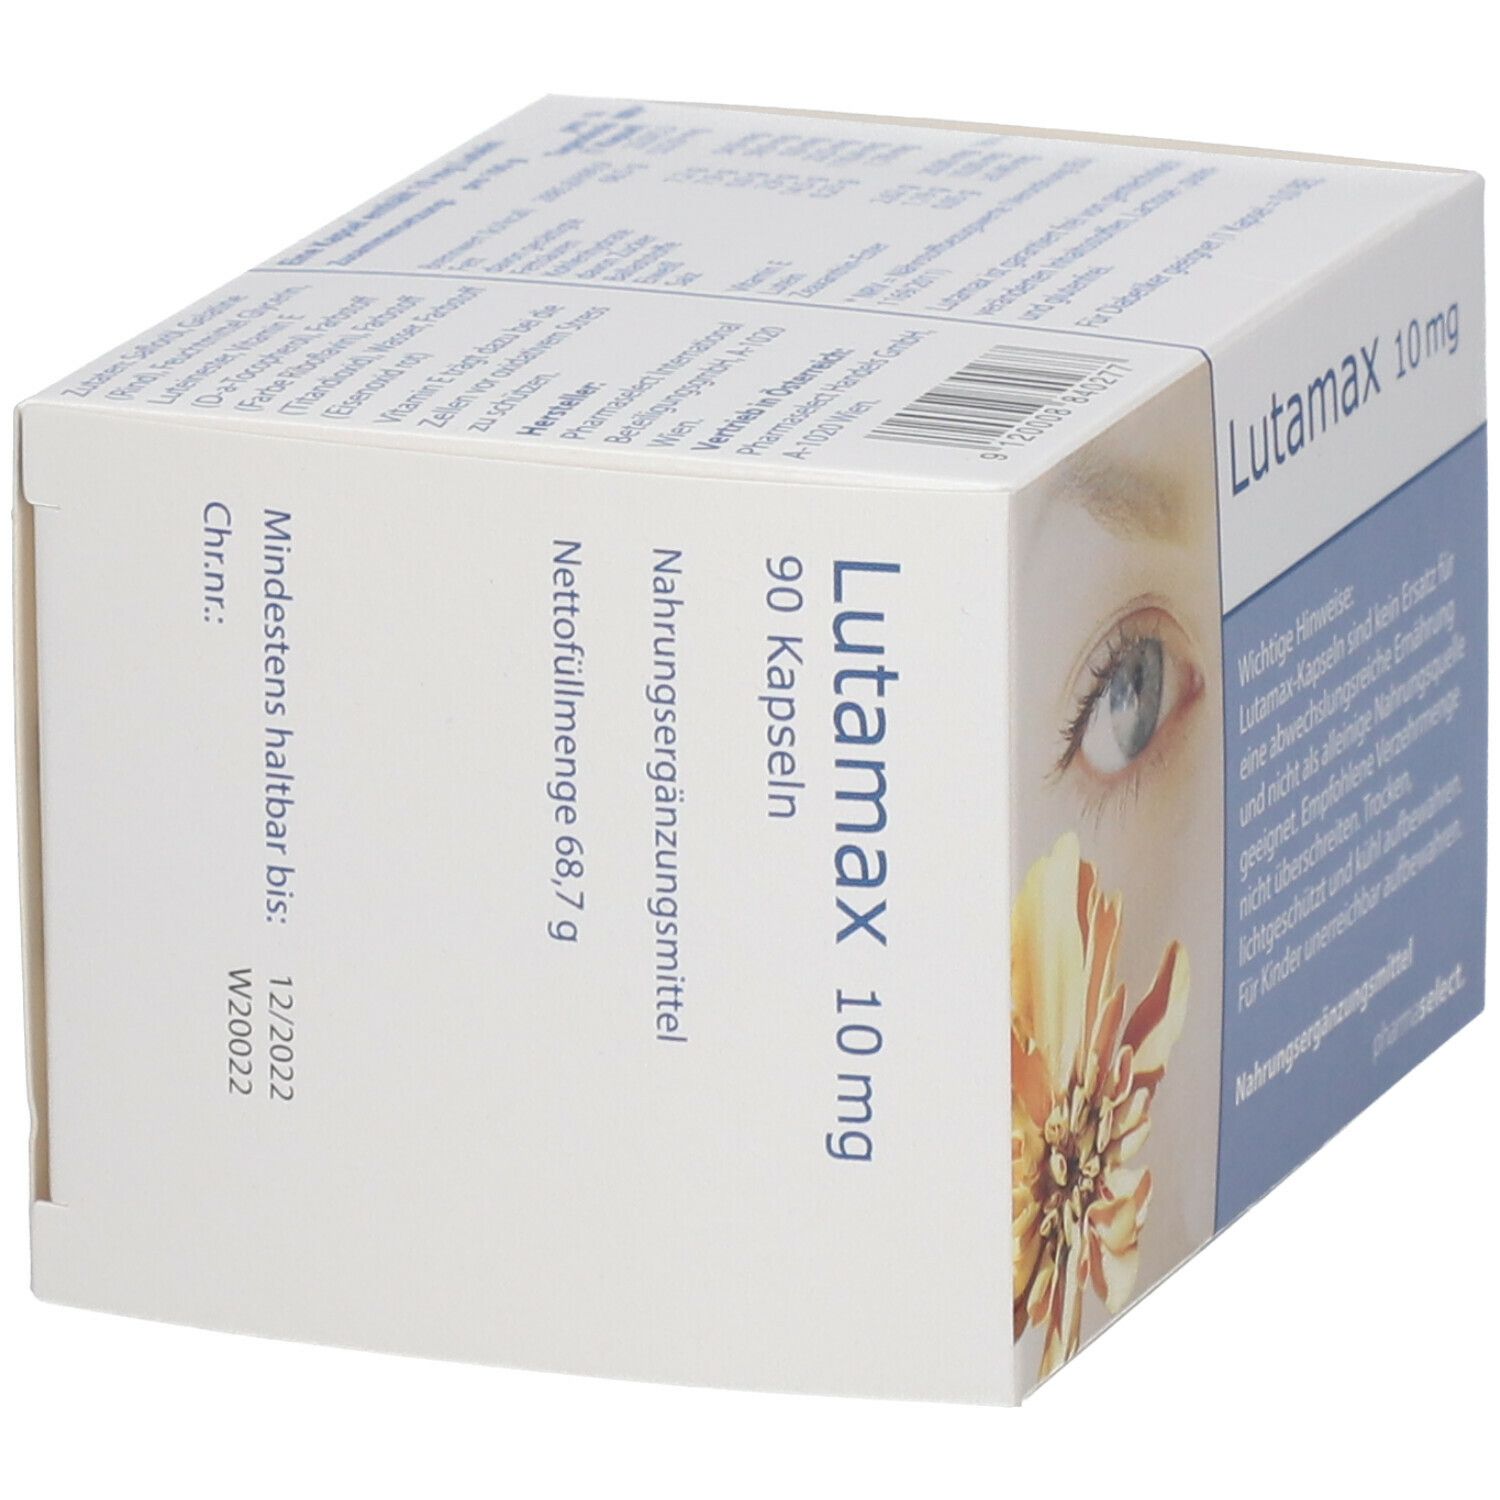 Lutamax 10 mg